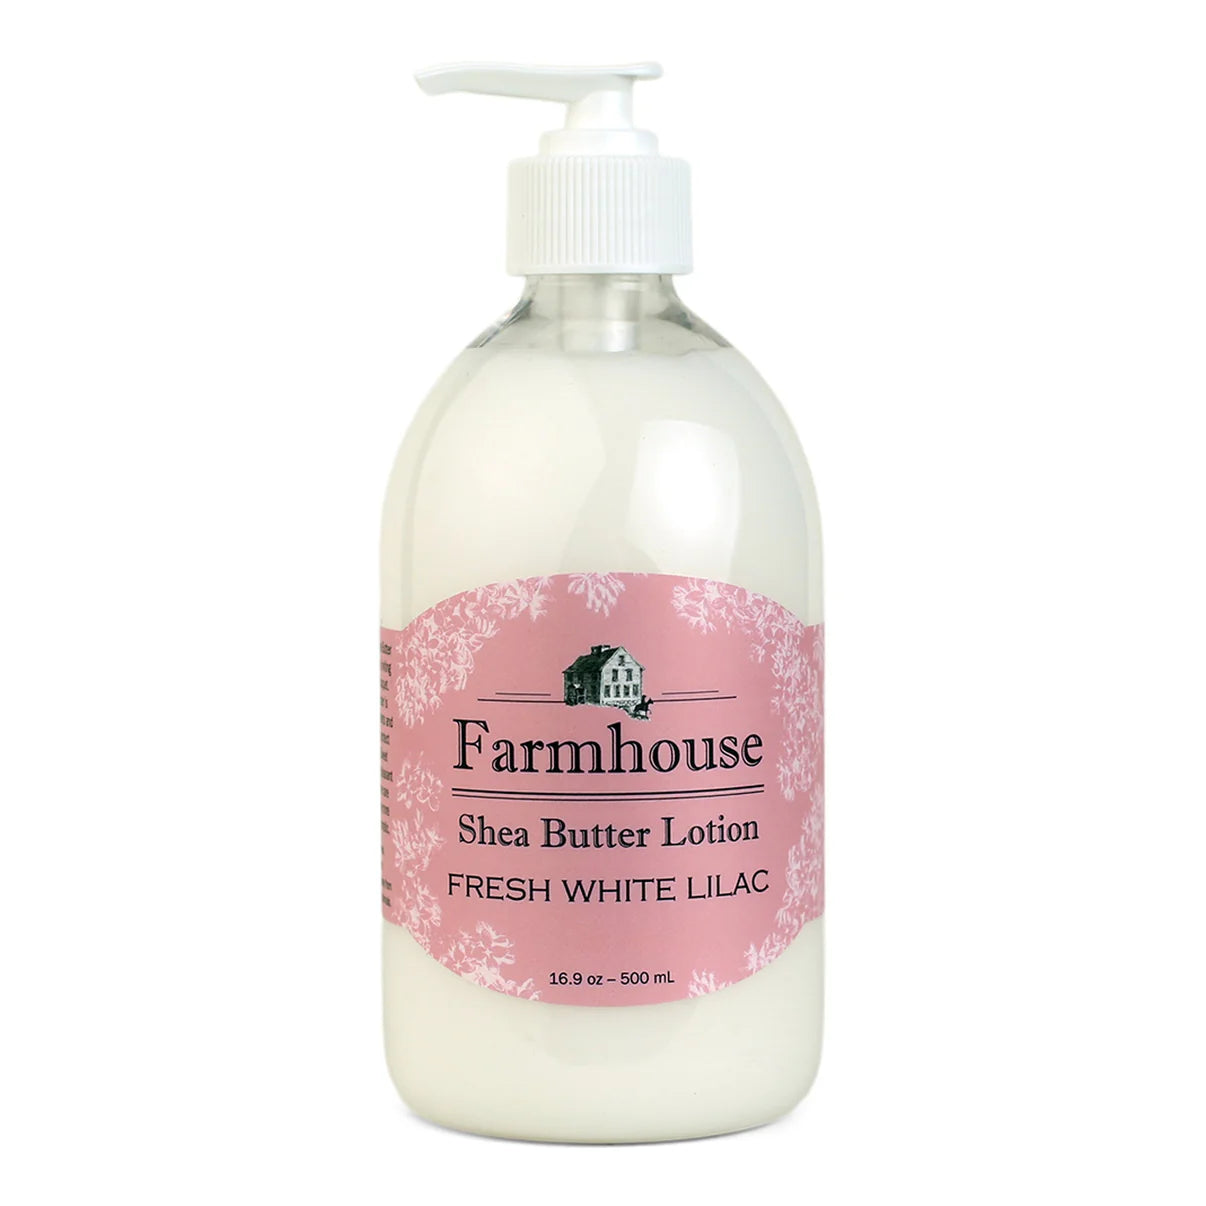 Farmhouse Fresh White Lilac Shea Butter Lotion 16.9oz